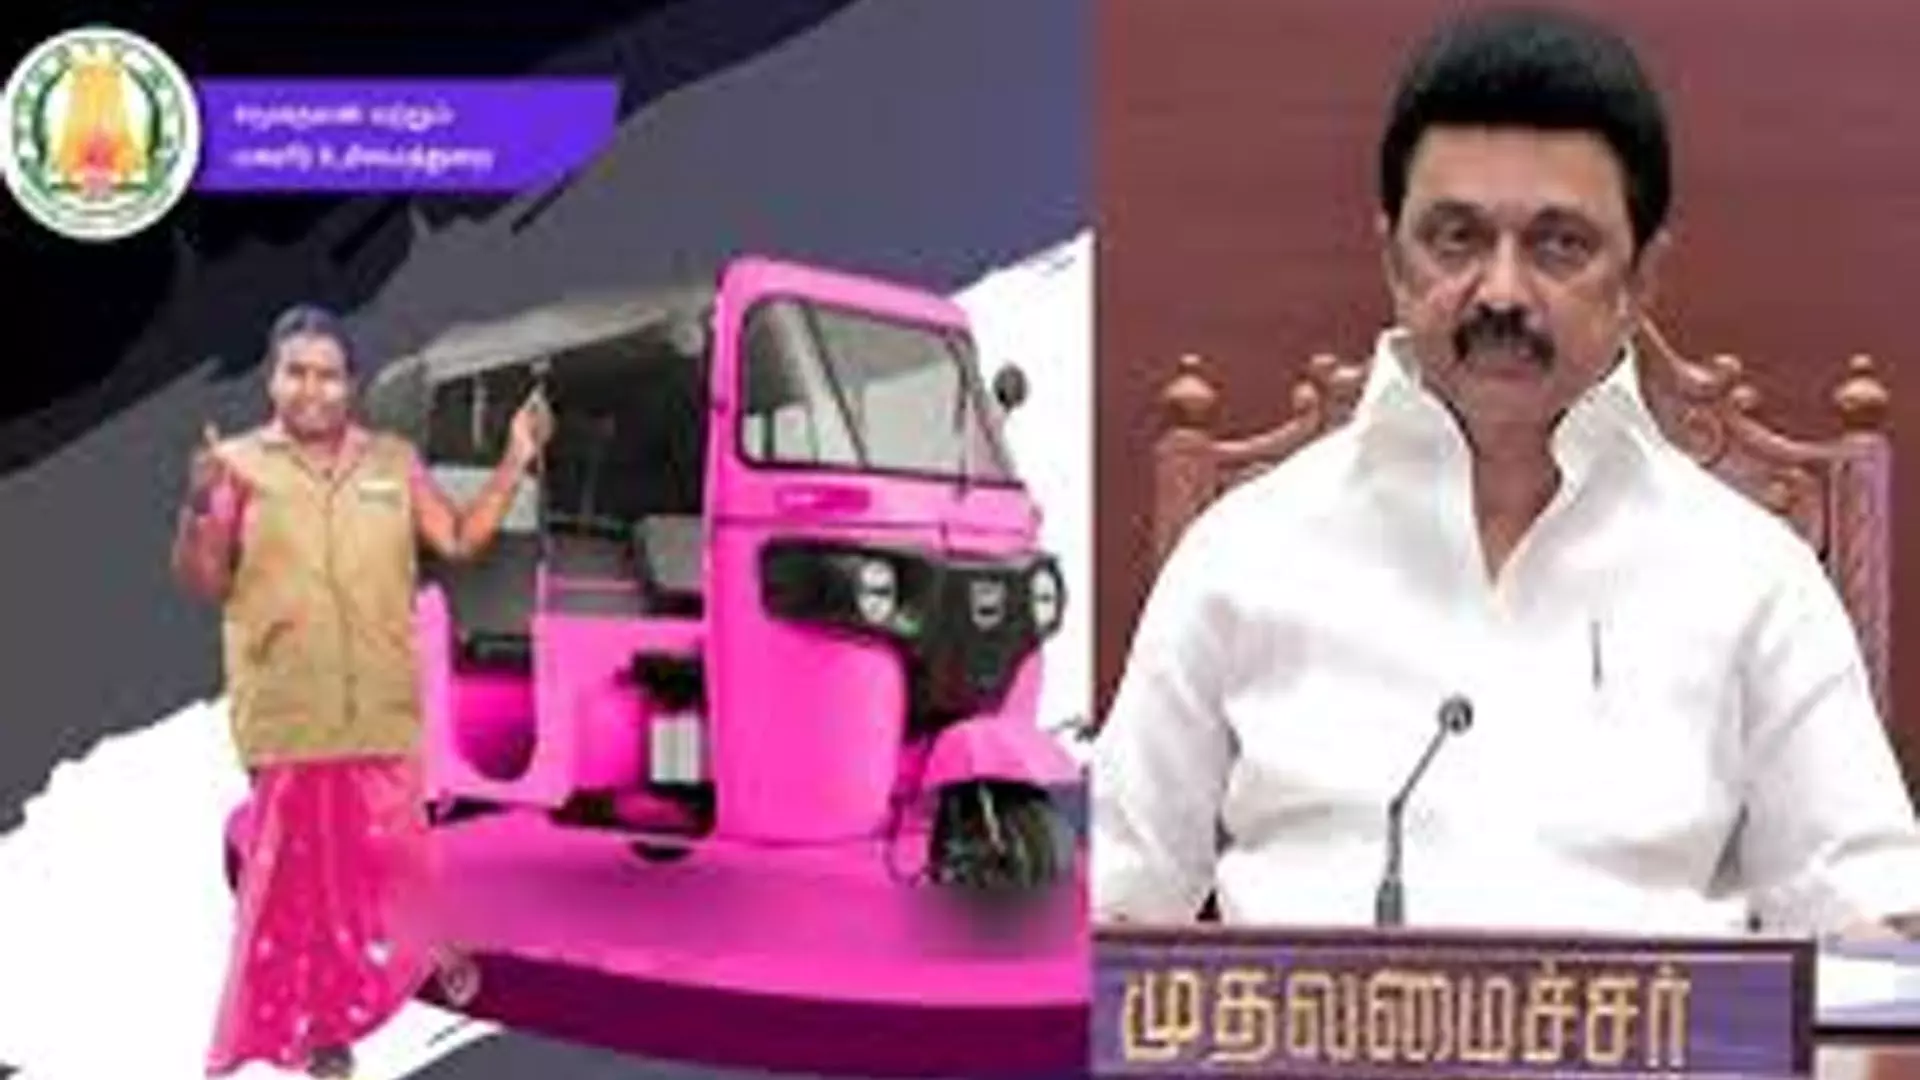 Chennai News: तमिलनाडु सरकार महिलाओं को गुलाबी रंग की गाड़ियां देगी